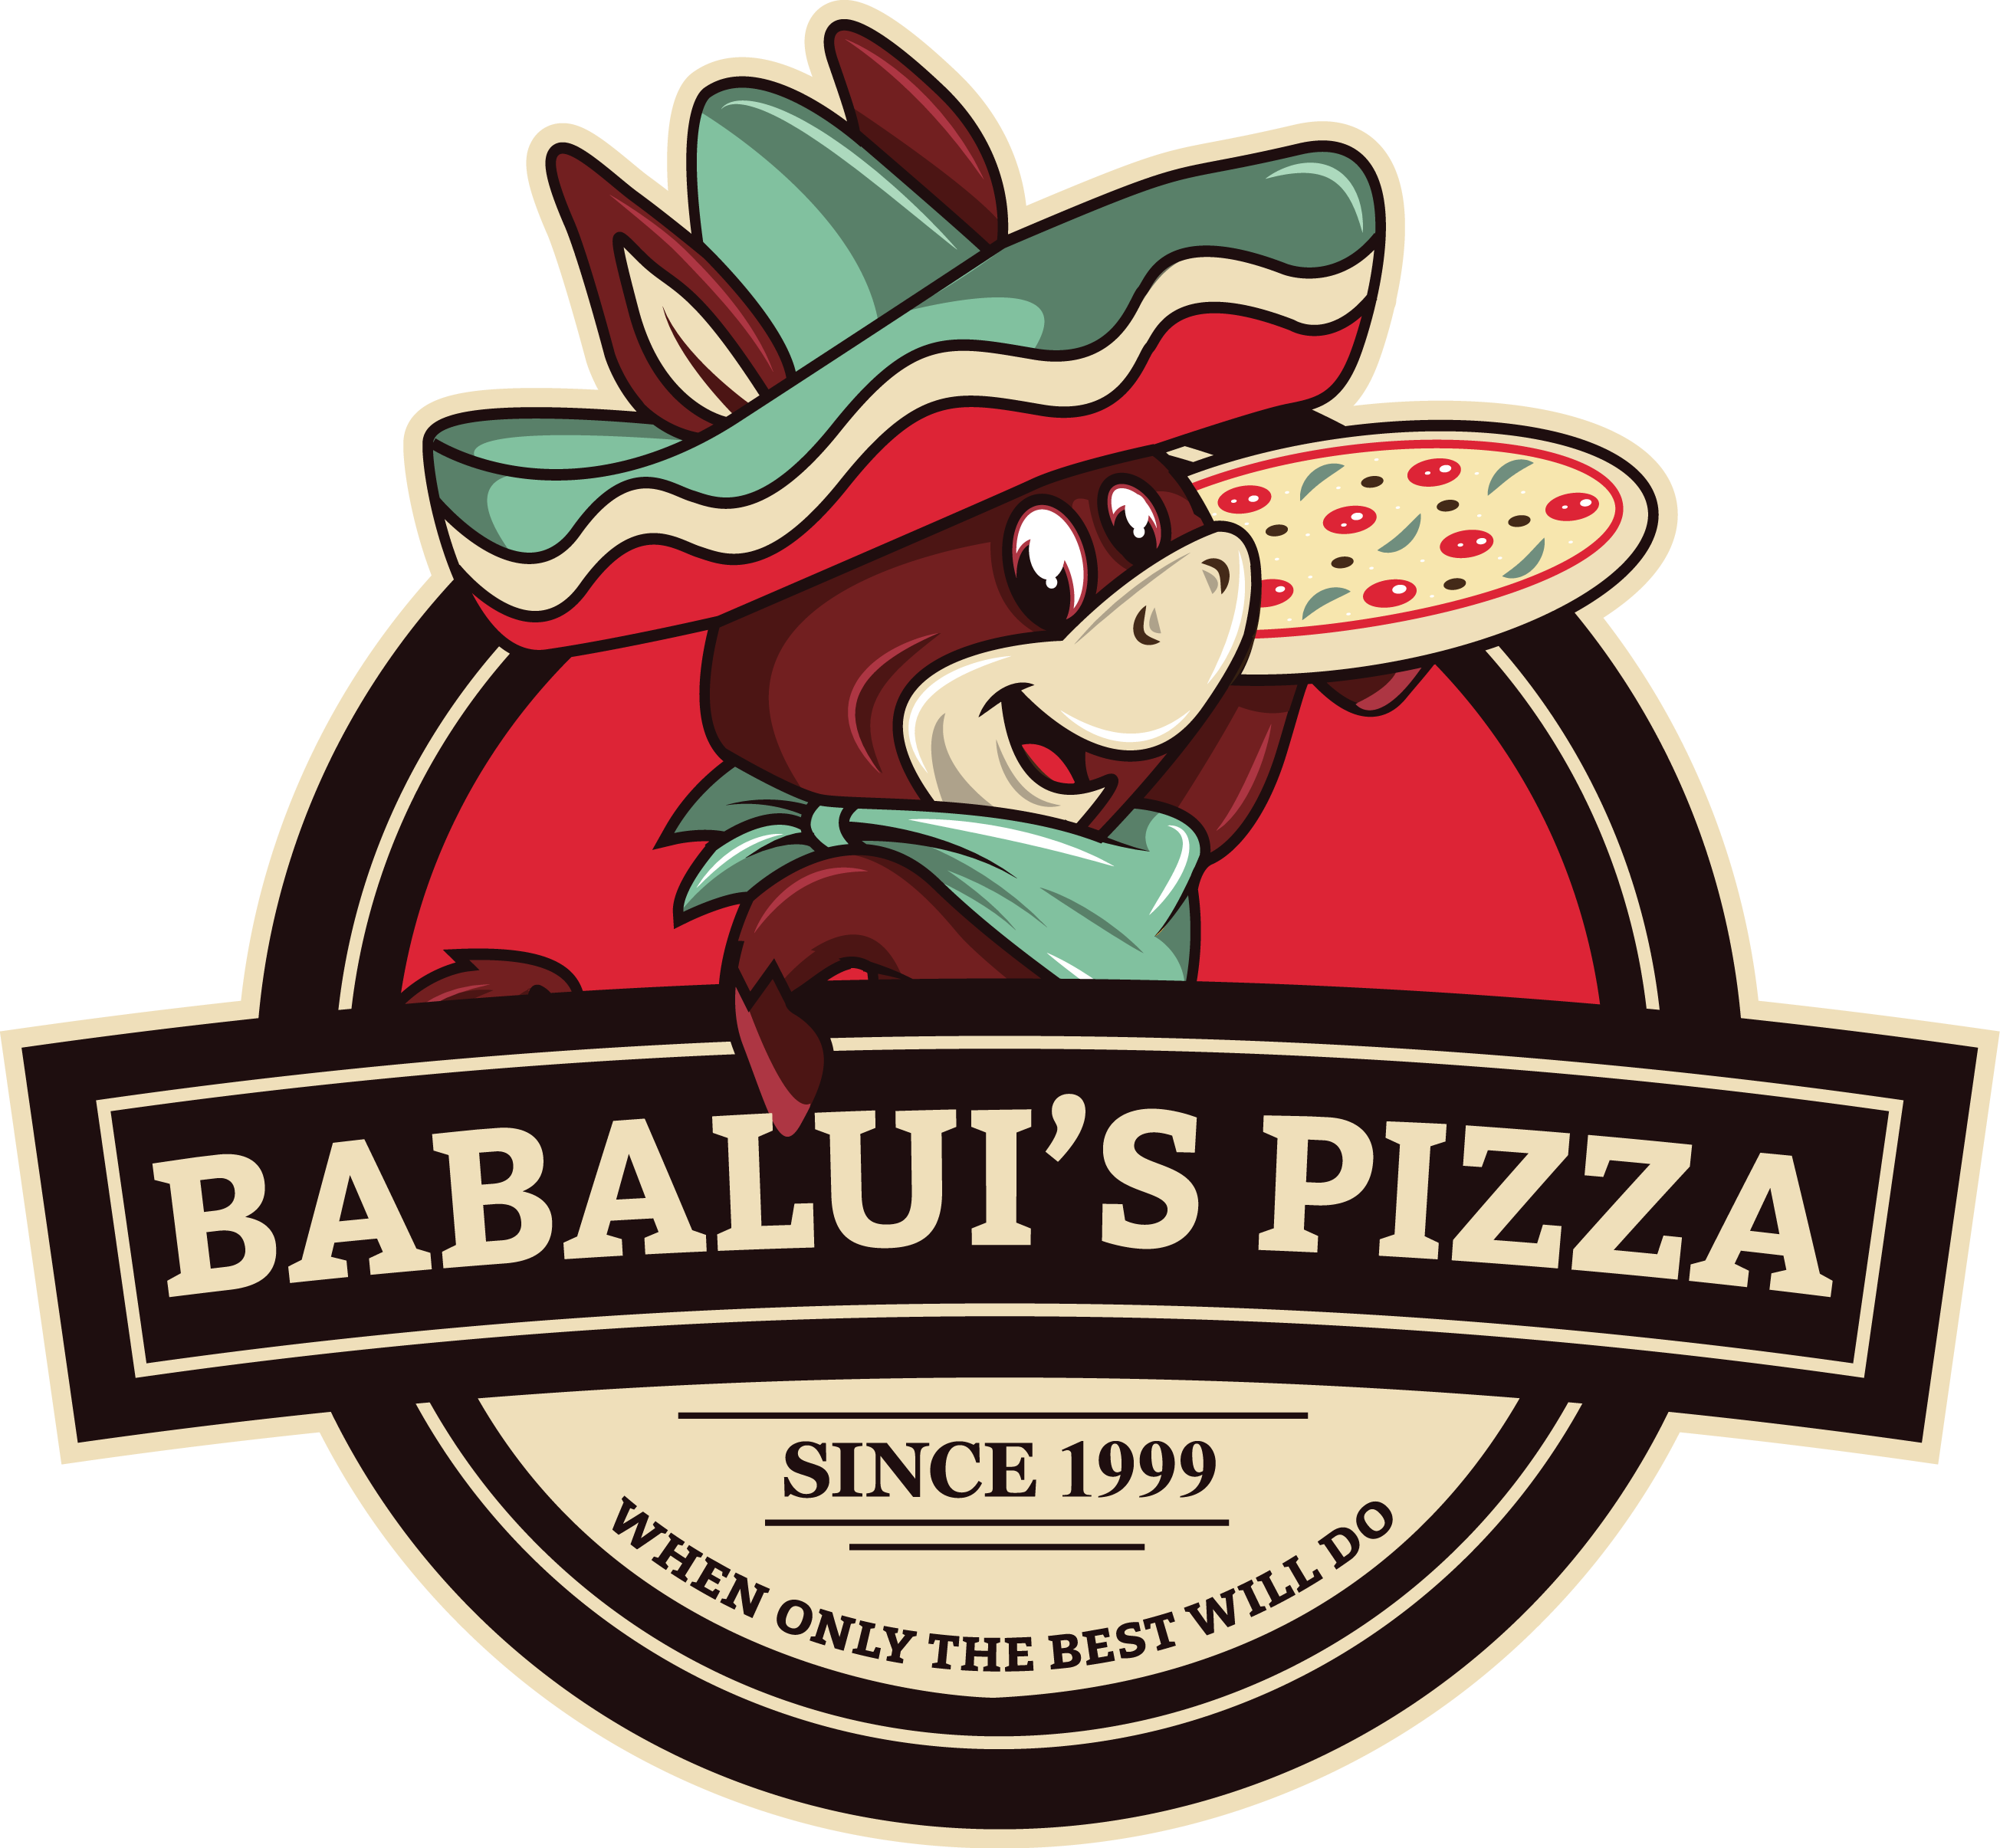 Babaluis Pizza And Pasta Bundoora - Chiricahua National Monument (2609x2411)